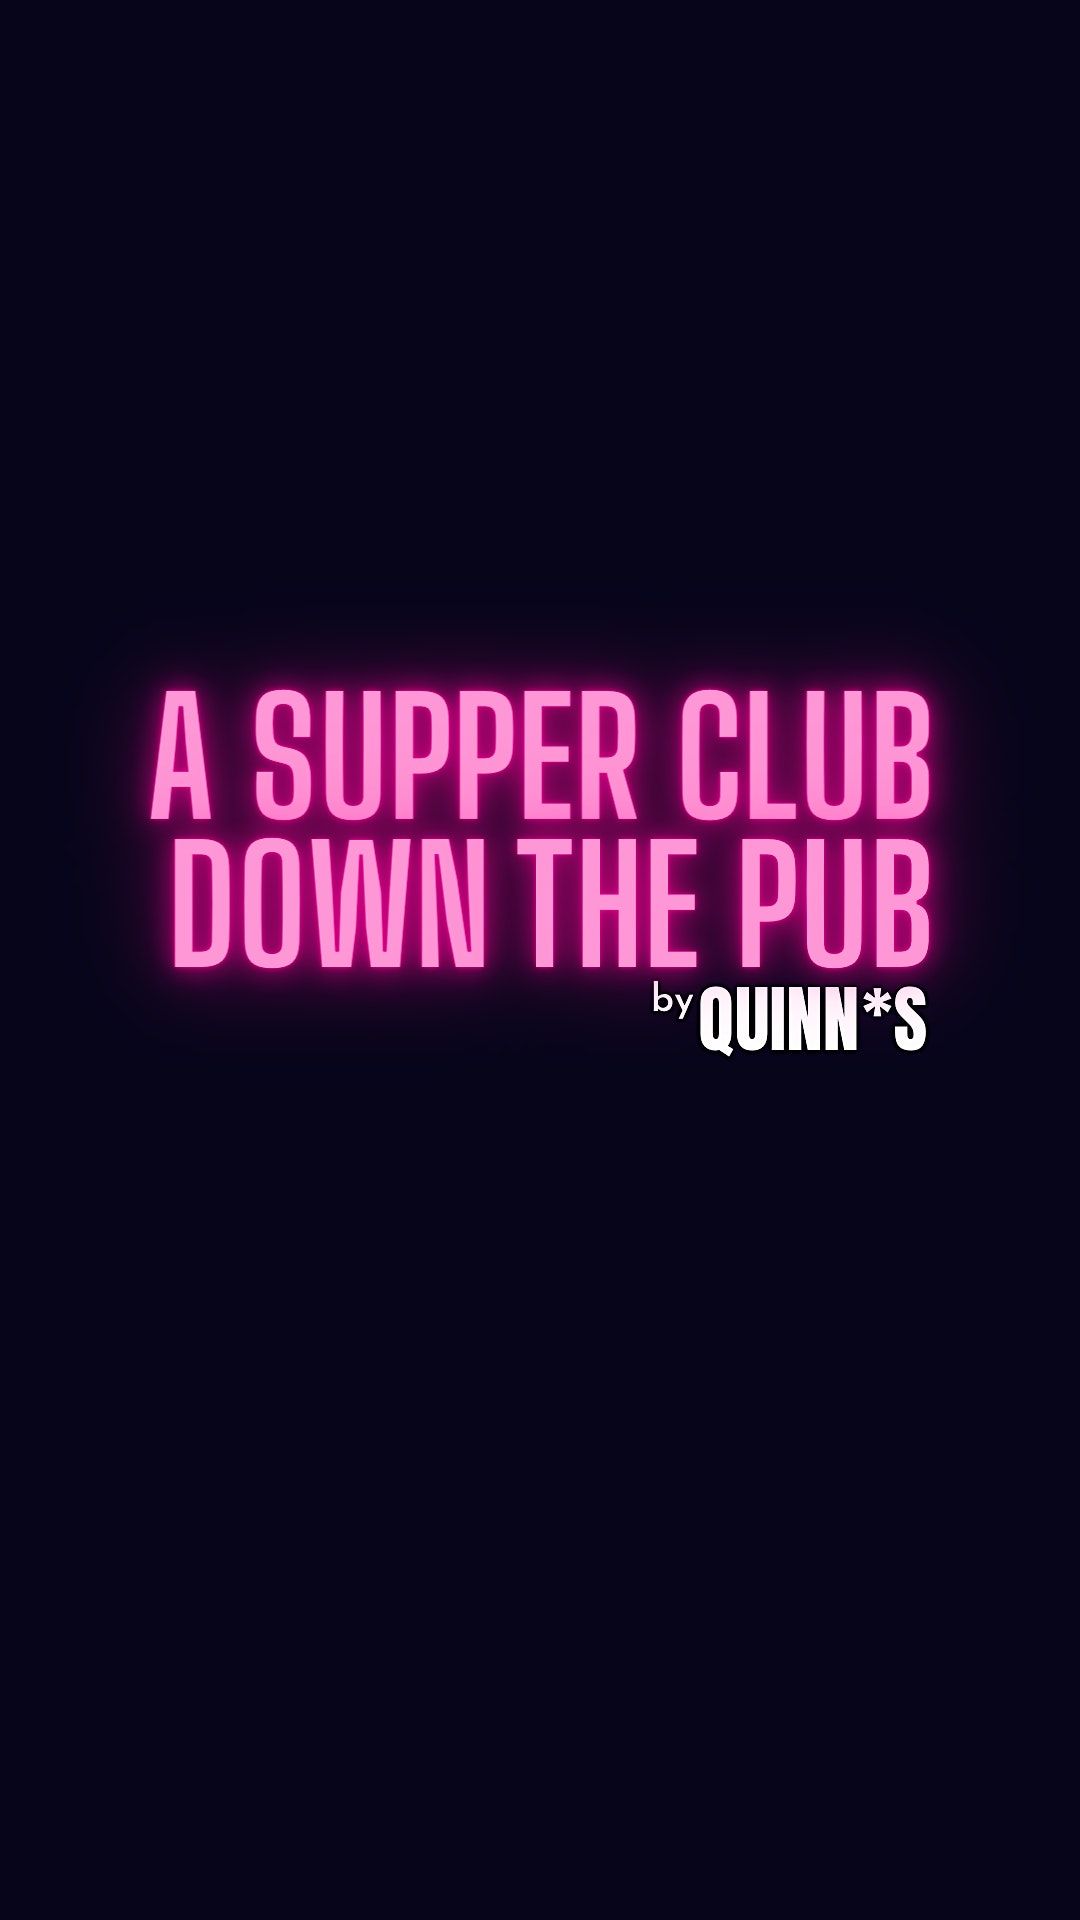 A Supper Club Down The Pub